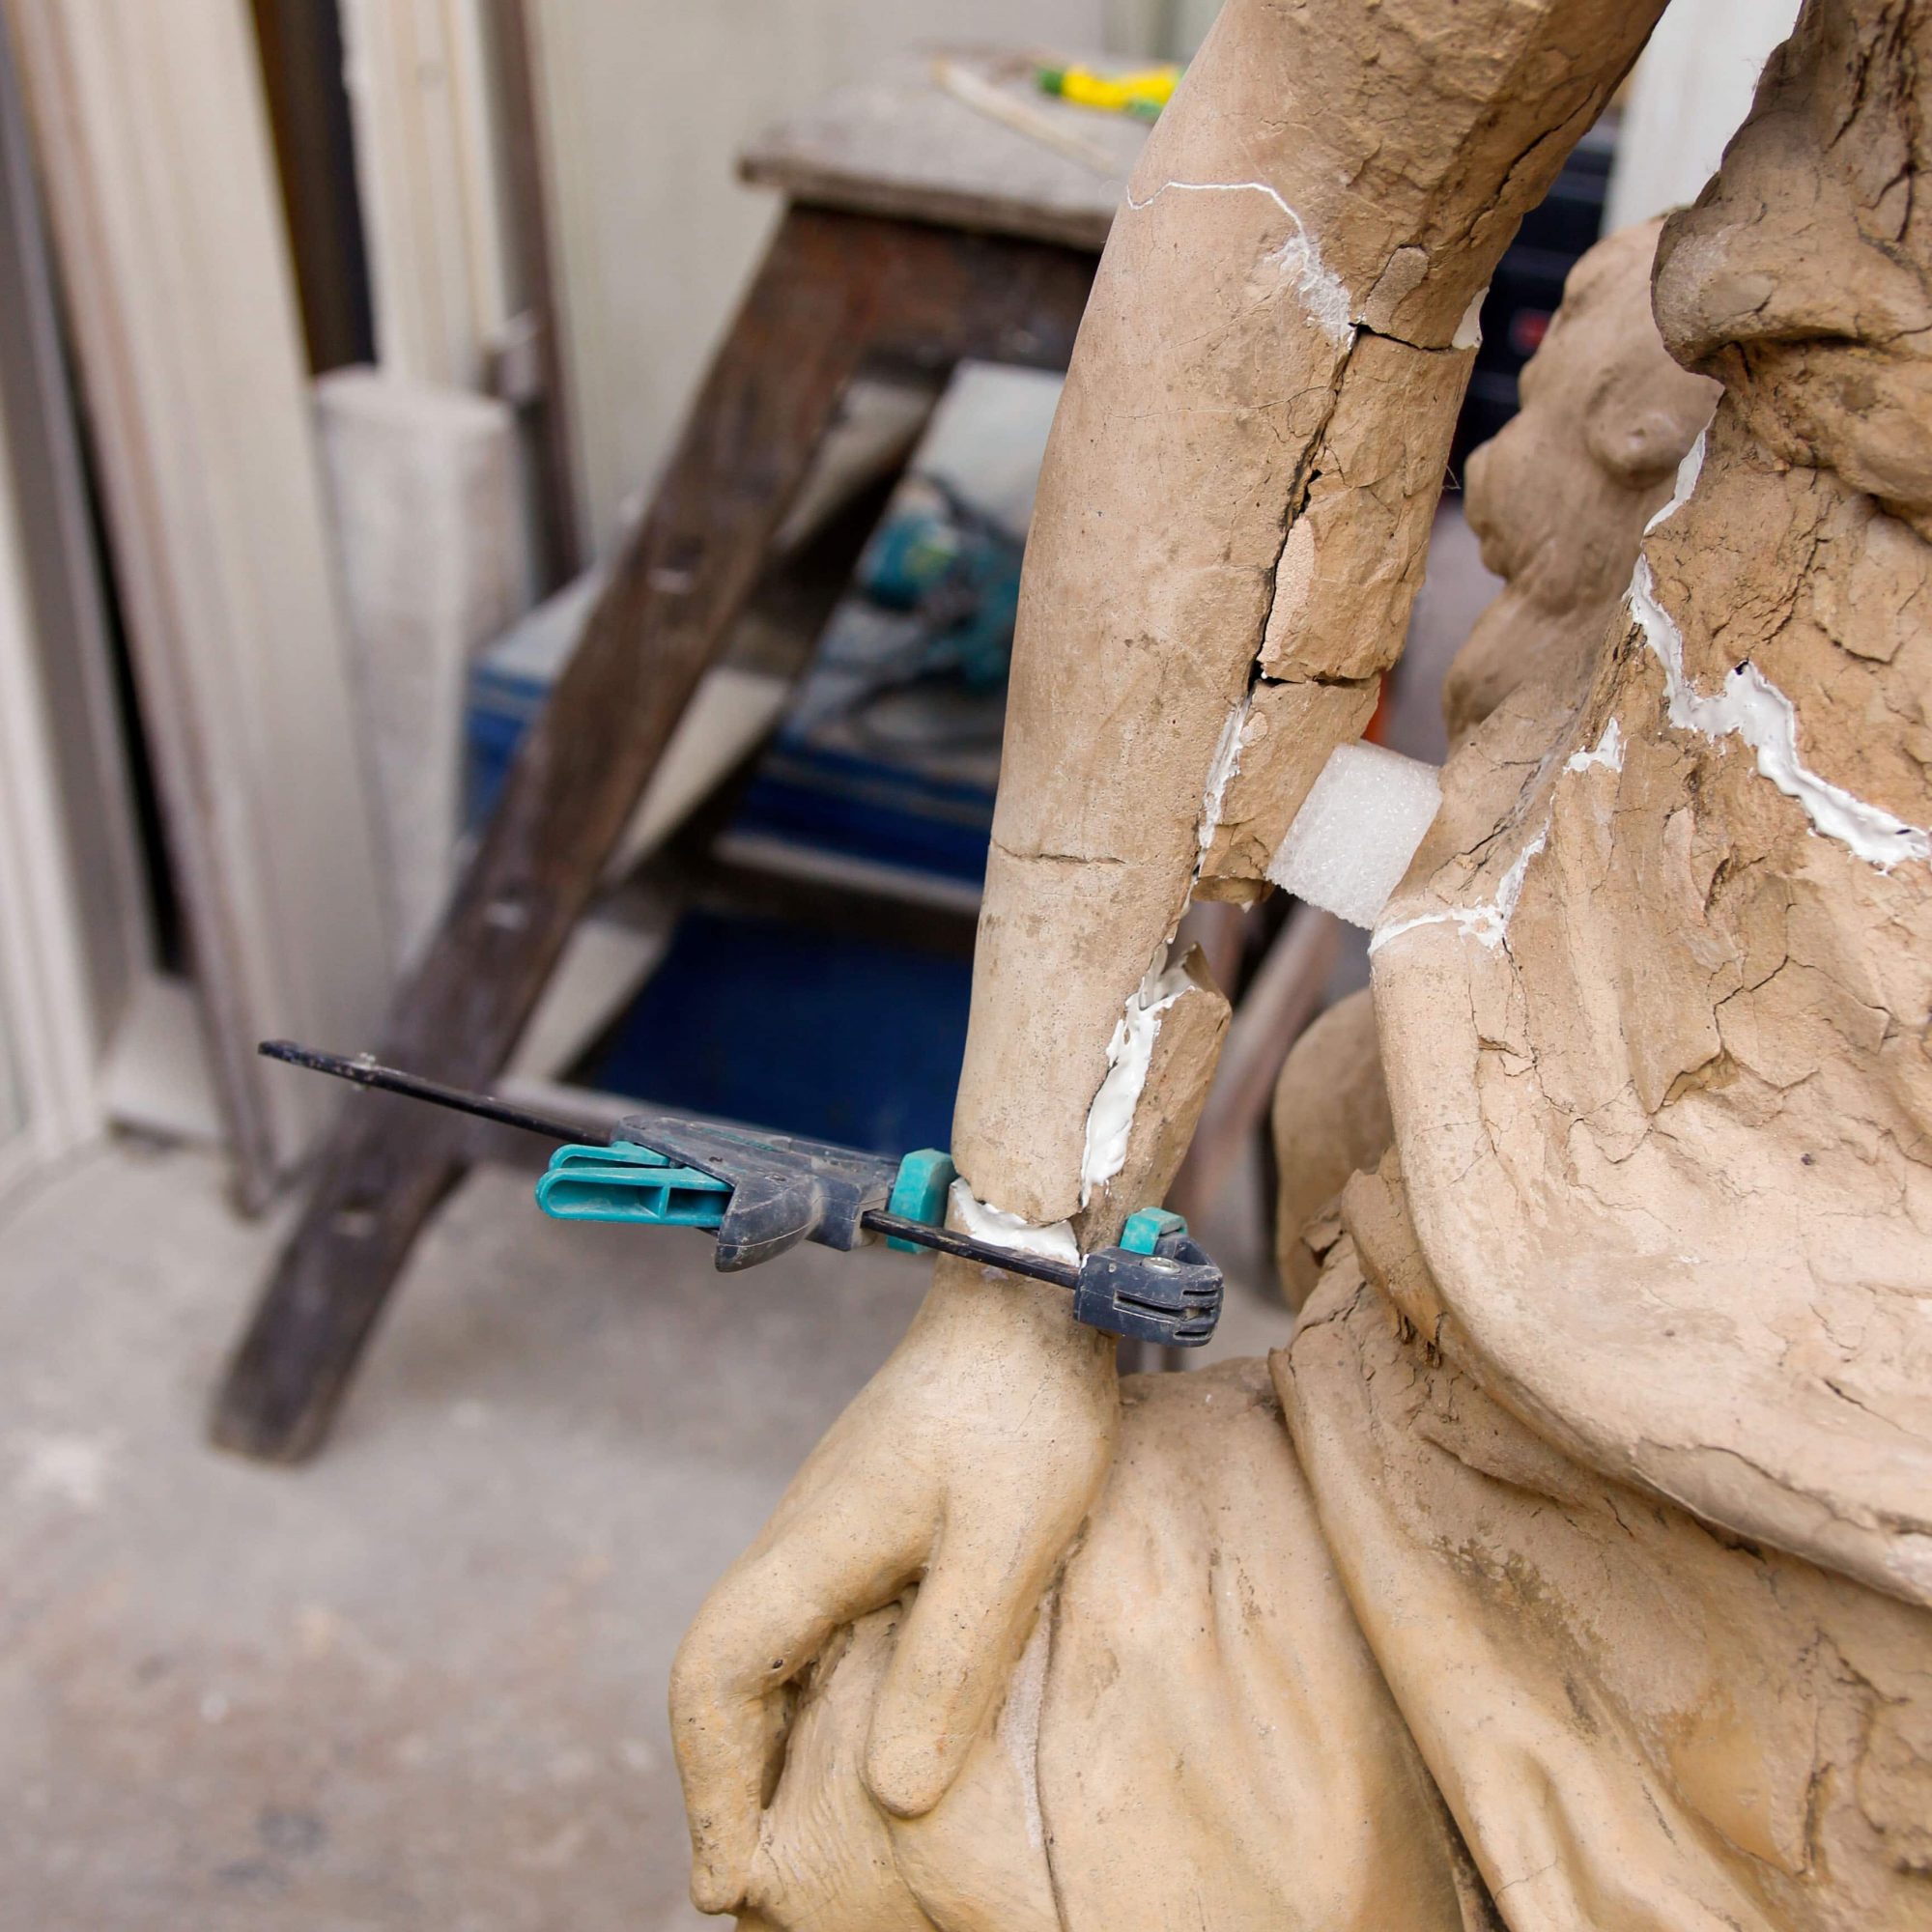 Sculpture en terre cuite, en cours de consolidation structurelle, détail du bras